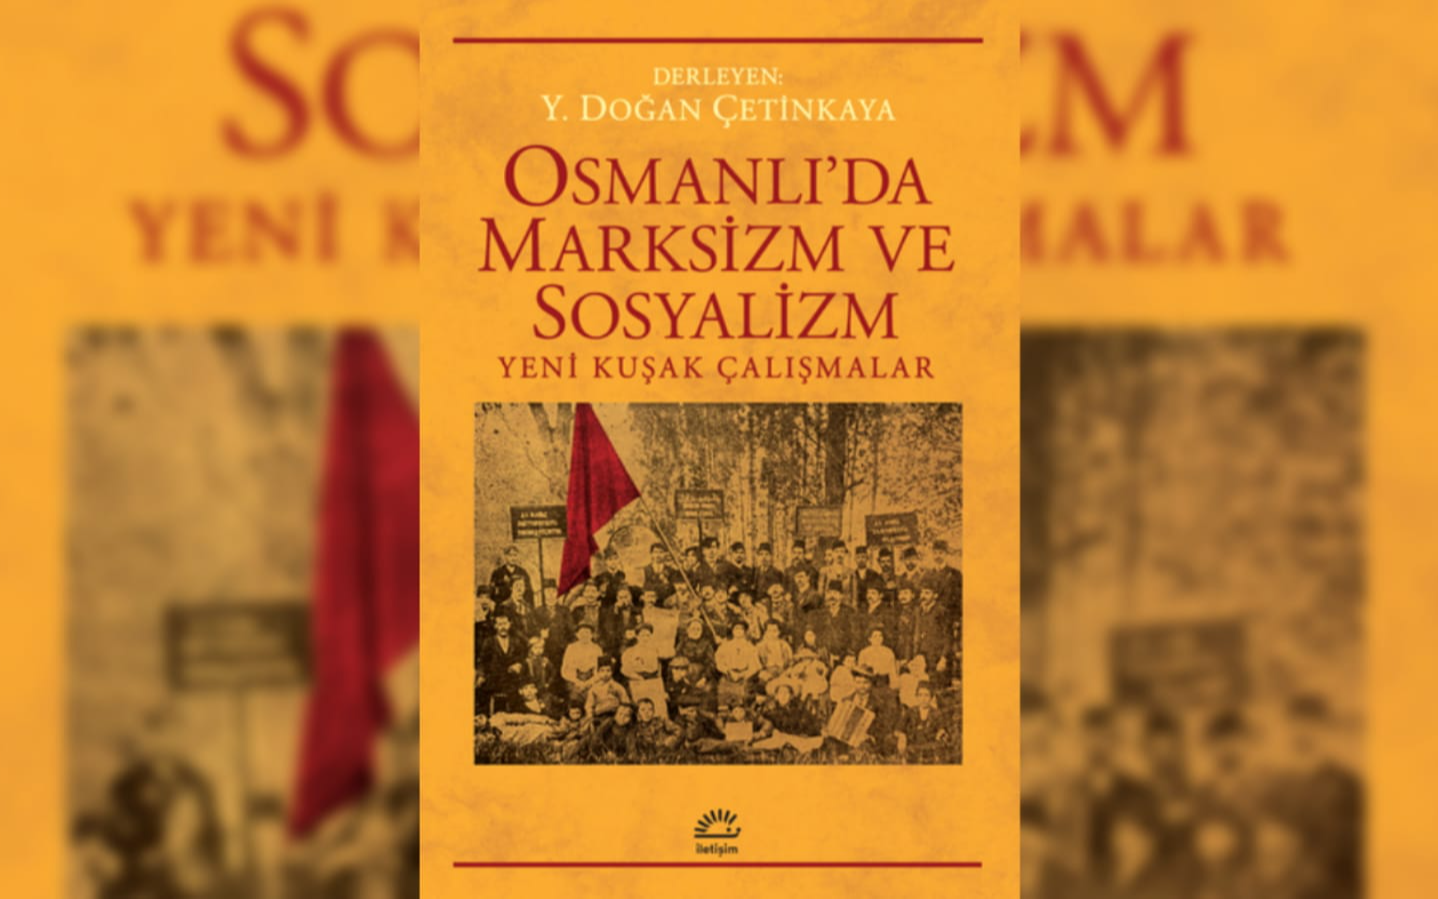 Osmanlı’da Marksizm, kuram ve sosyalist hareketler